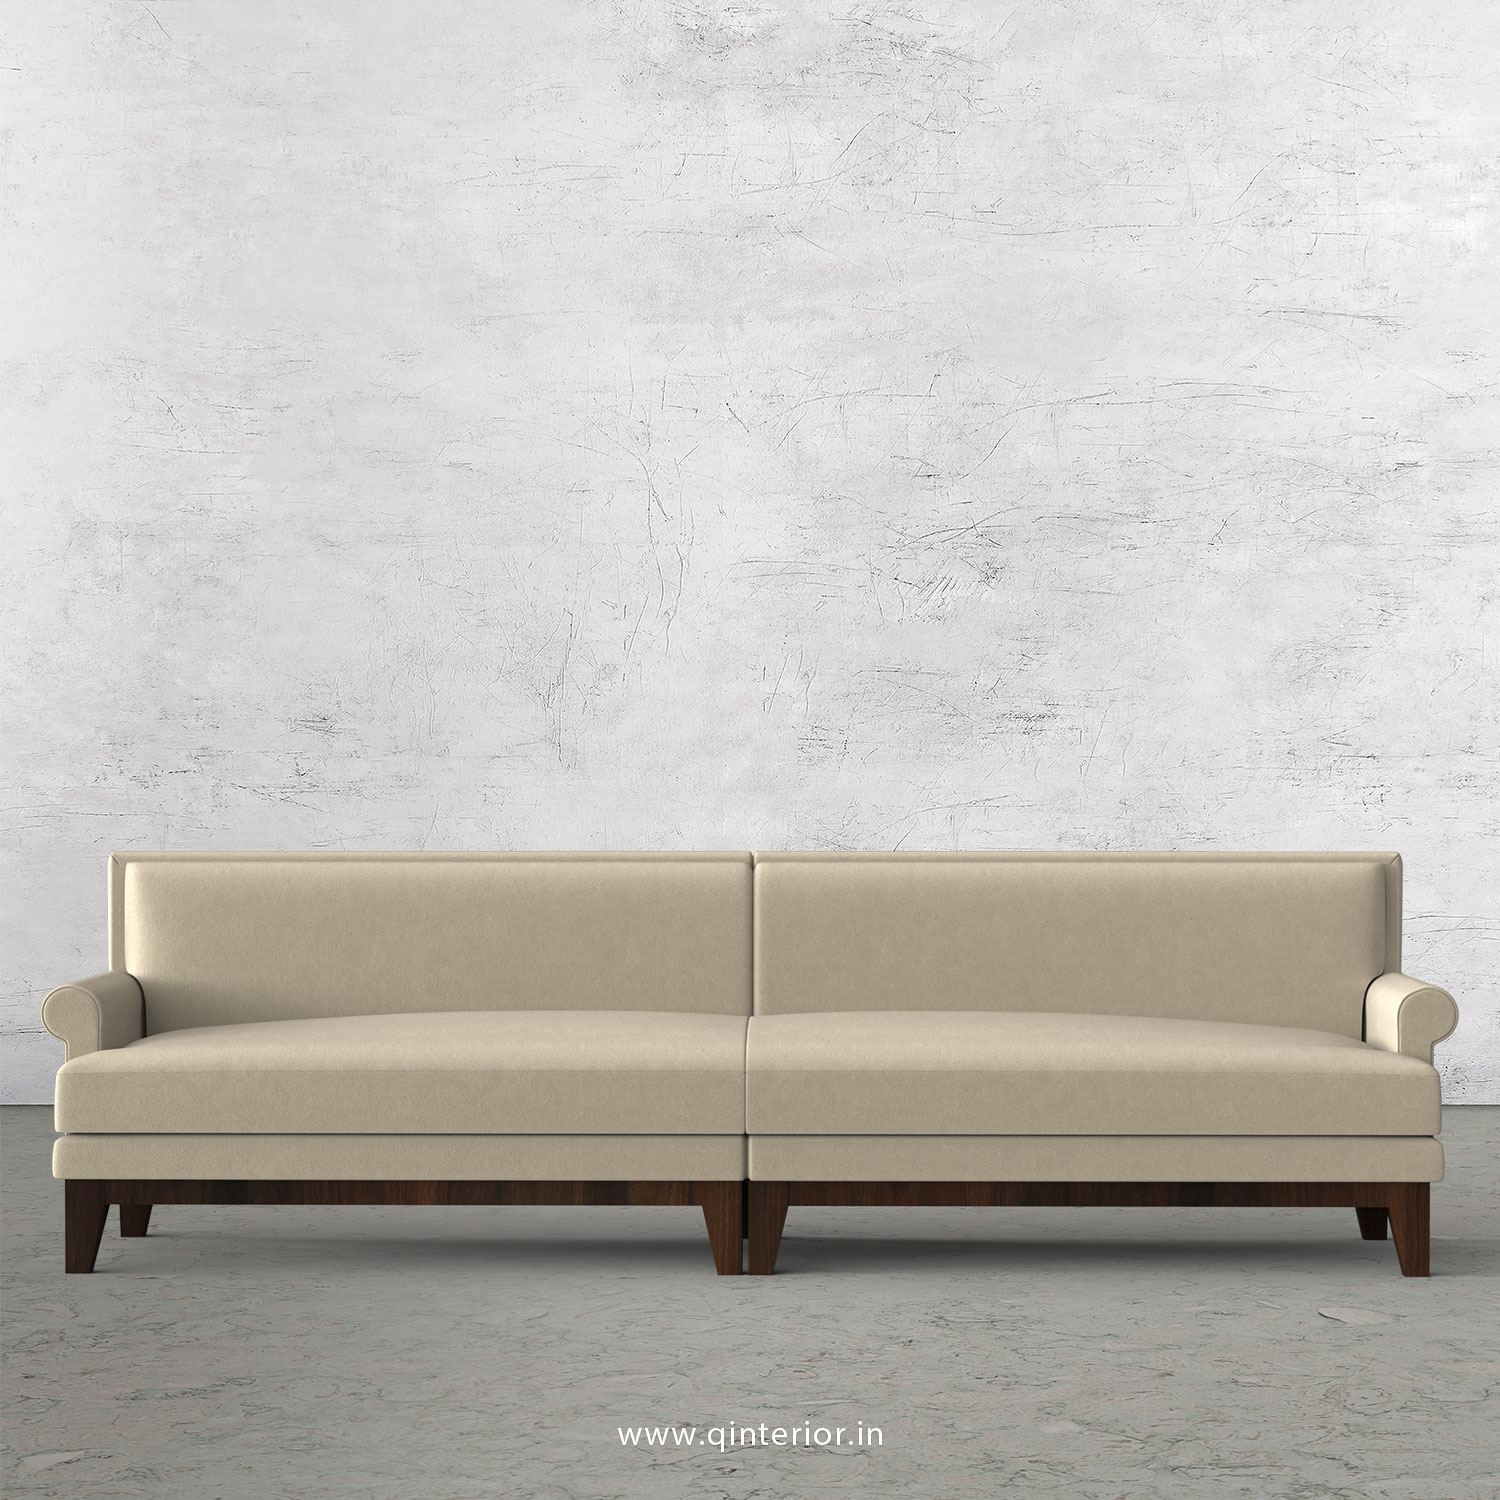 Aviana 4 Seater Sofa in Velvet Fabric - SFA001 VL01